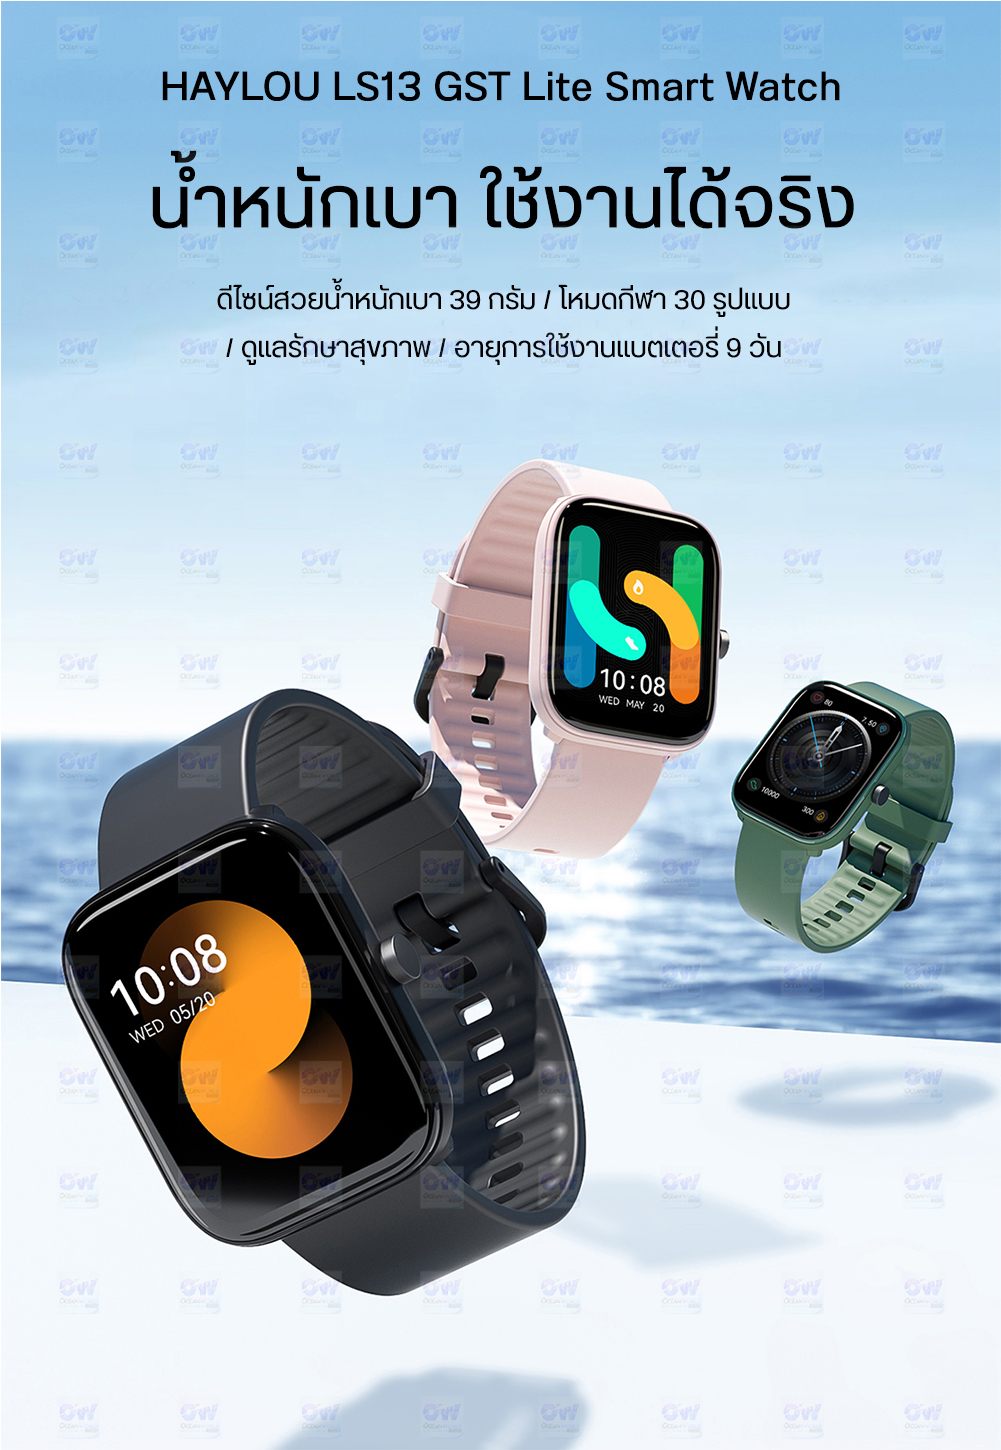 ภาพที่ให้รายละเอียดเกี่ยวกับ Haylou Solar LS05 / LS13 GST Lite Smart Watch Fitness Tracker Waterproof 12 Sport Modes,Call Reminder, Blth 5.0 นาฬิกาสมาทวอช สมาร์ทวอช์ท อัจฉริยะ กันน้ำ IP68 พร้อม 12 โหมดออกกำลังกาย